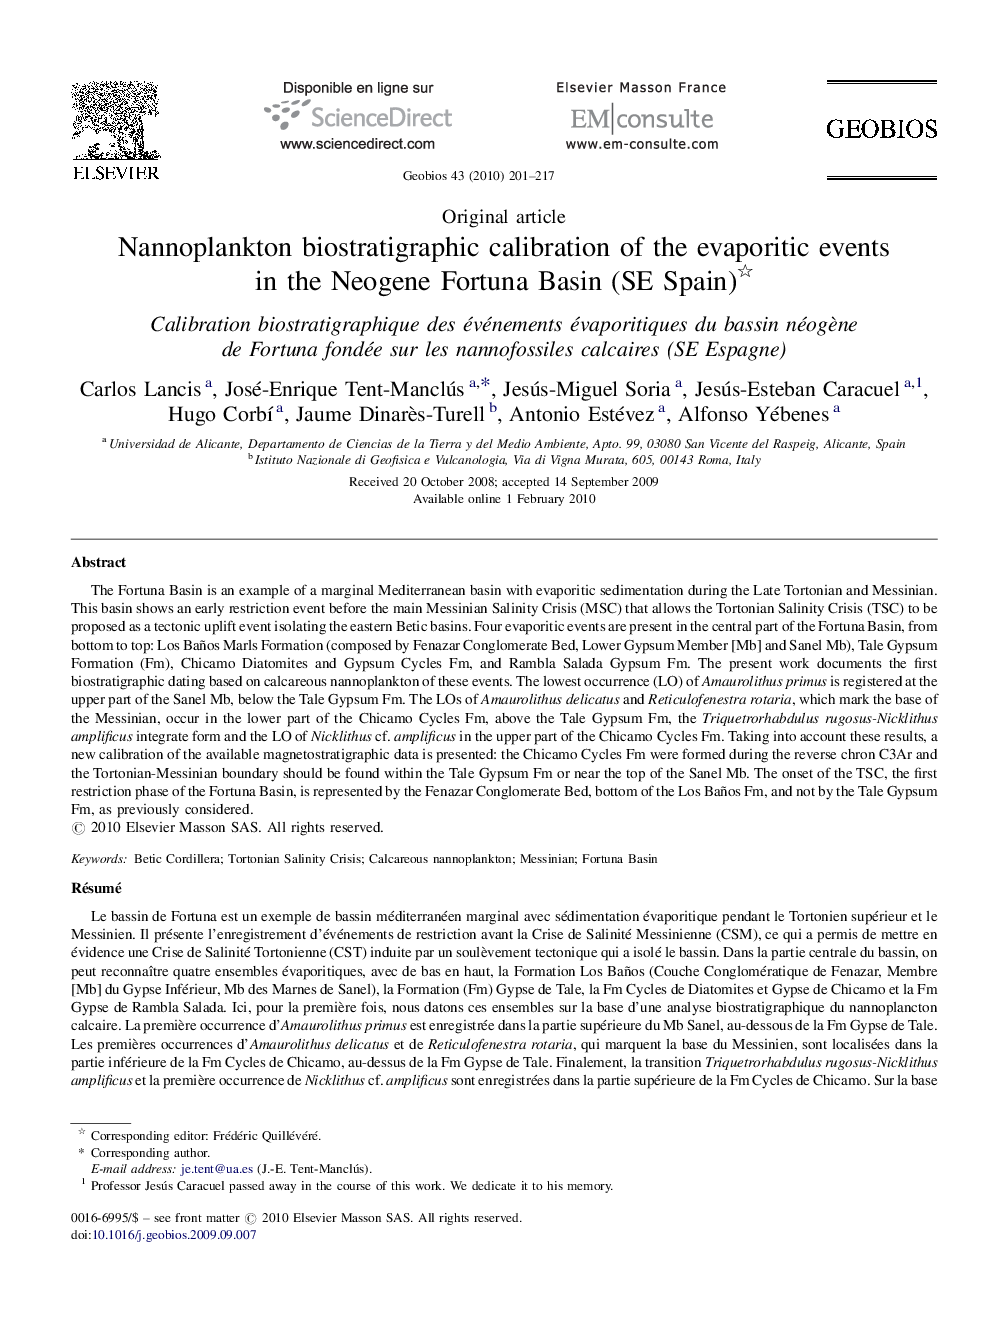 Nannoplankton biostratigraphic calibration of the evaporitic events in the Neogene Fortuna Basin (SE Spain) 